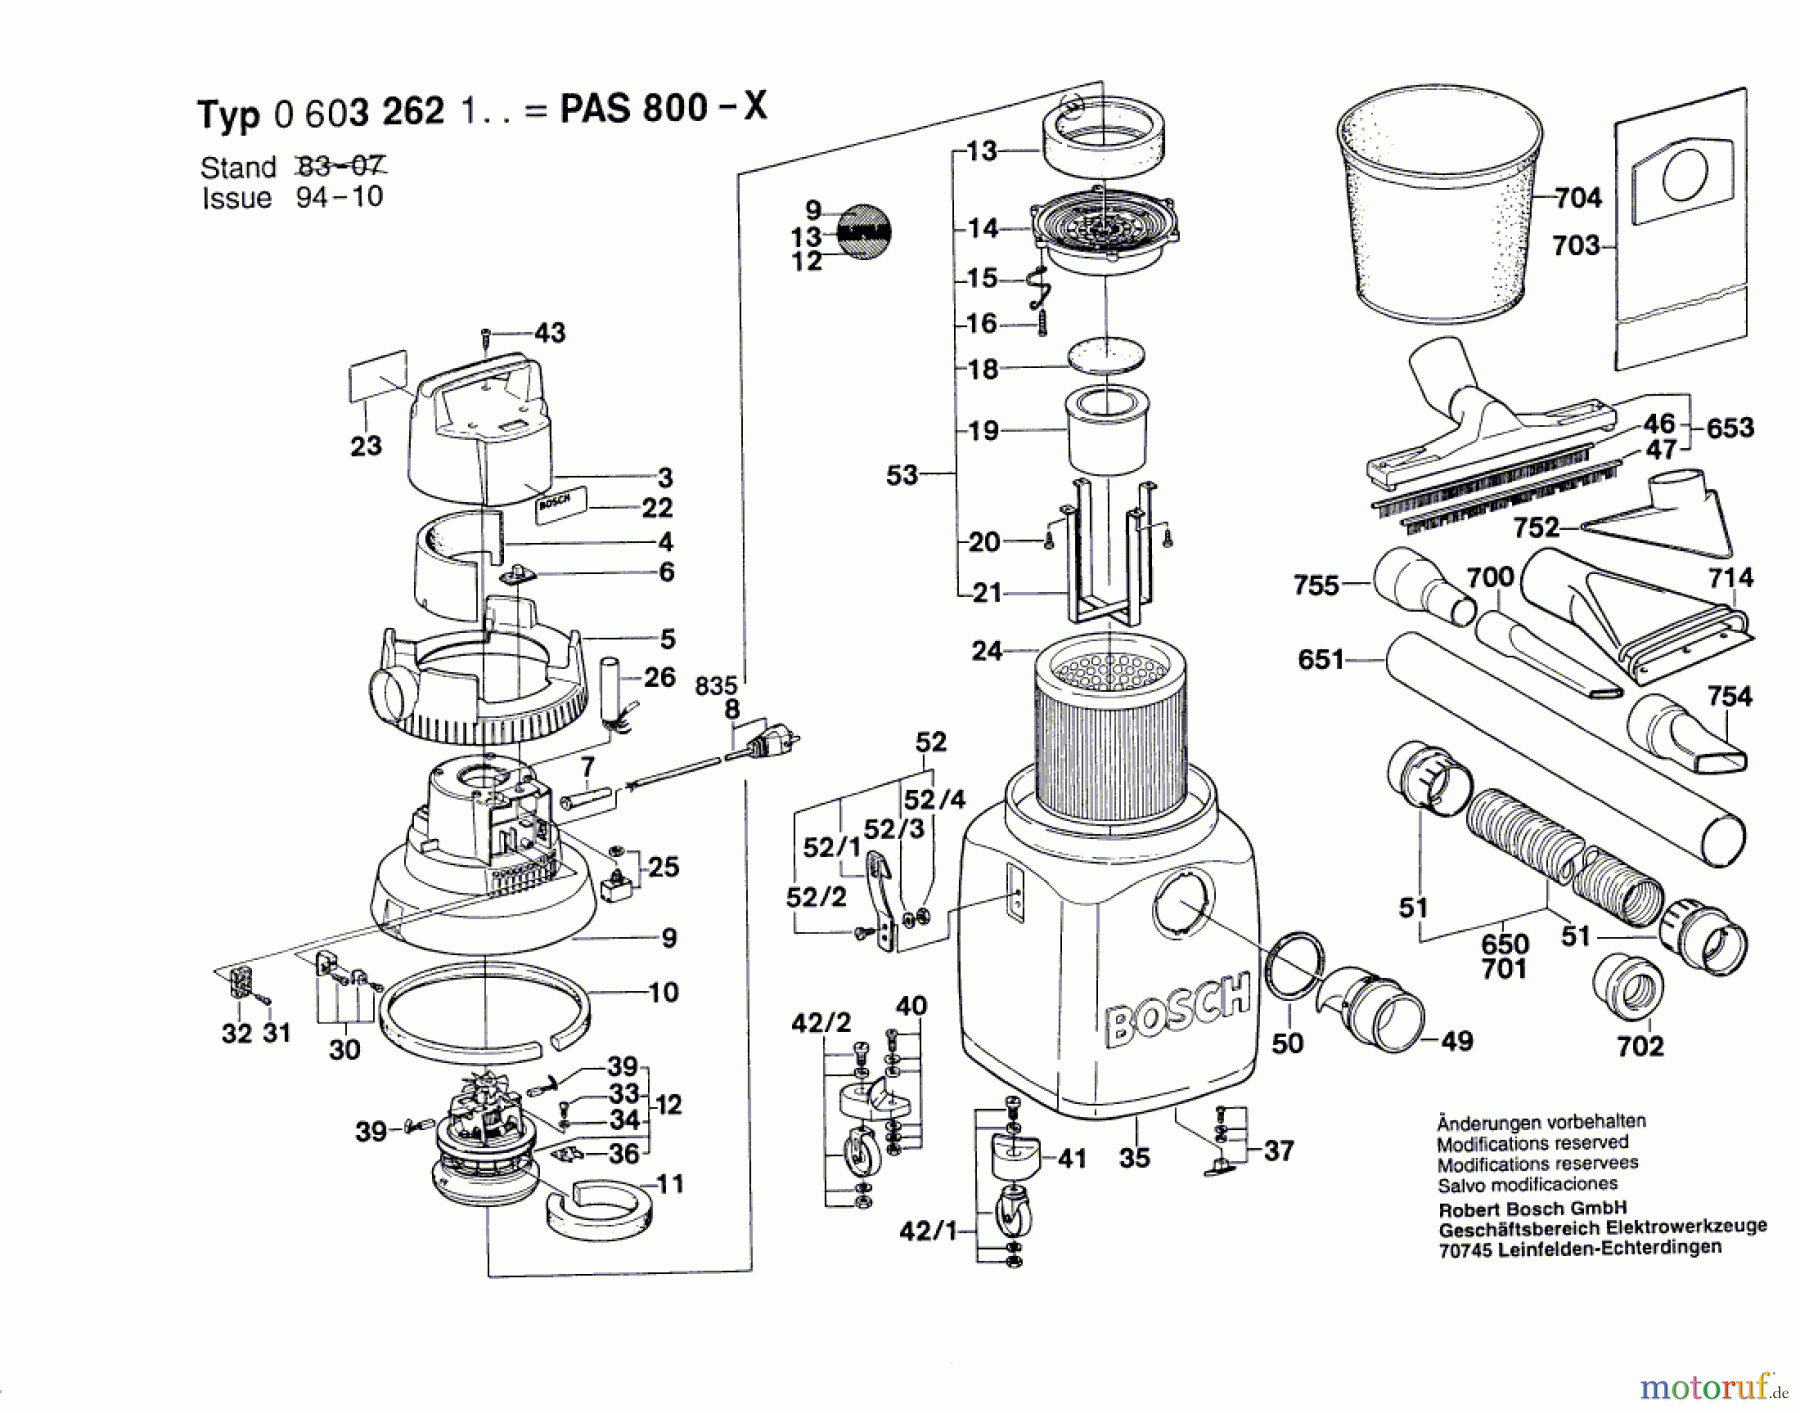  Bosch Werkzeug Gw-Allzwecksauger PAS 800-X Seite 1